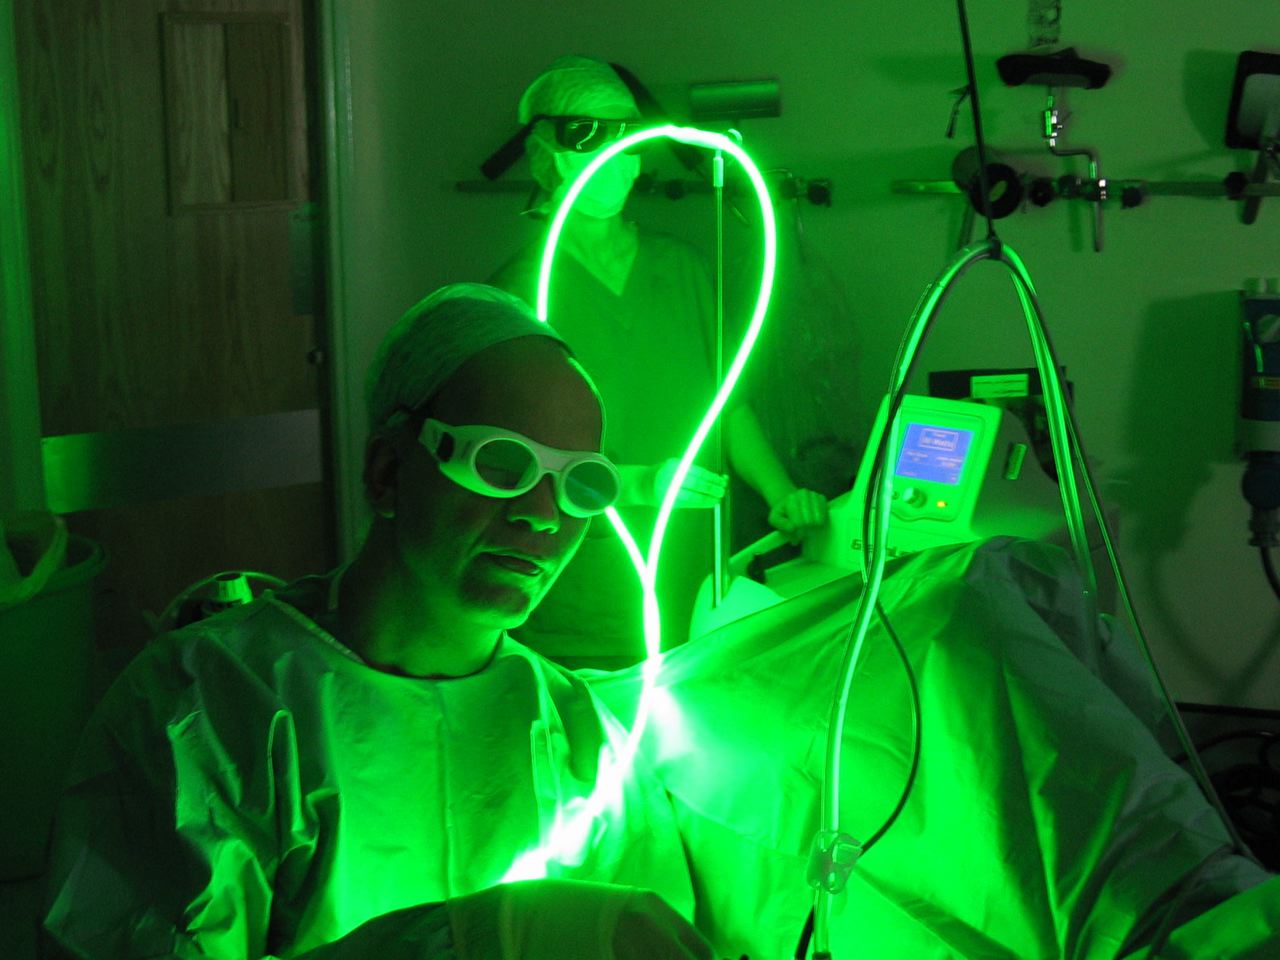 Метод оперирования с помощью зеленого лазера, излучение которого поглощается гемоглобином, поэтому эго действие выборочно, набирает популярности